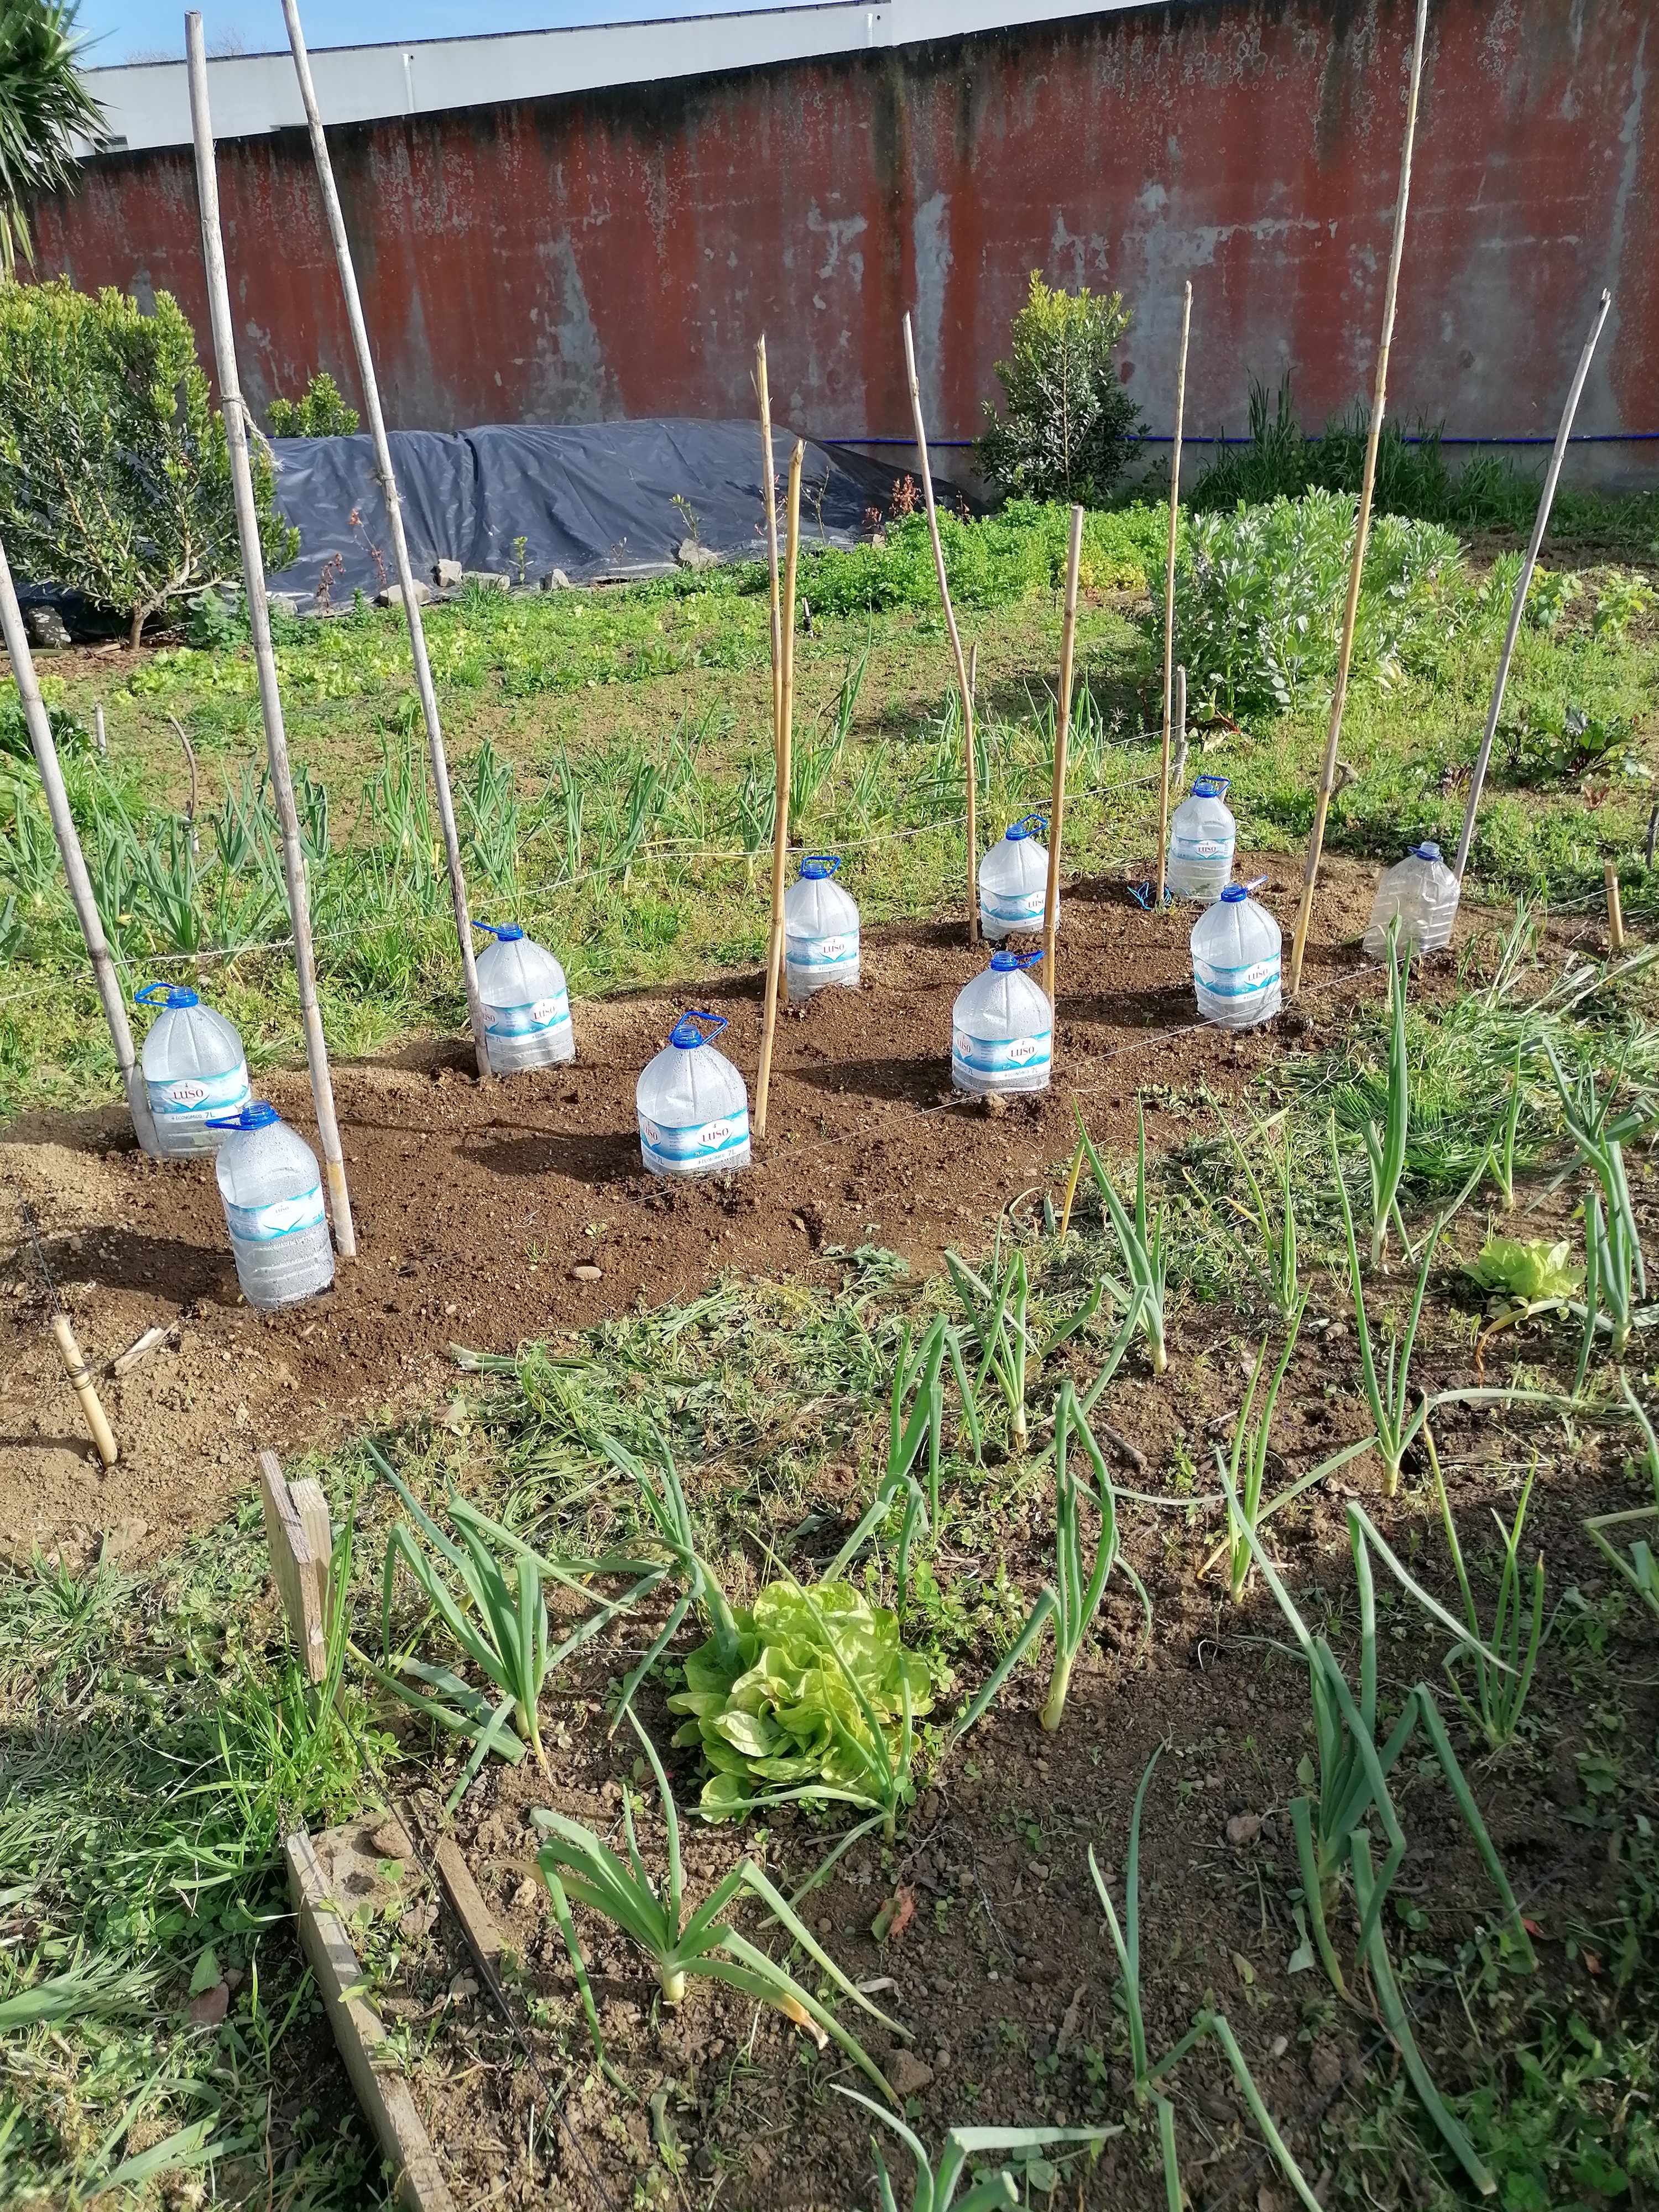 Vista da horta, canteiro com utilização de garrafões para criação de microclima na cultura de tomate.